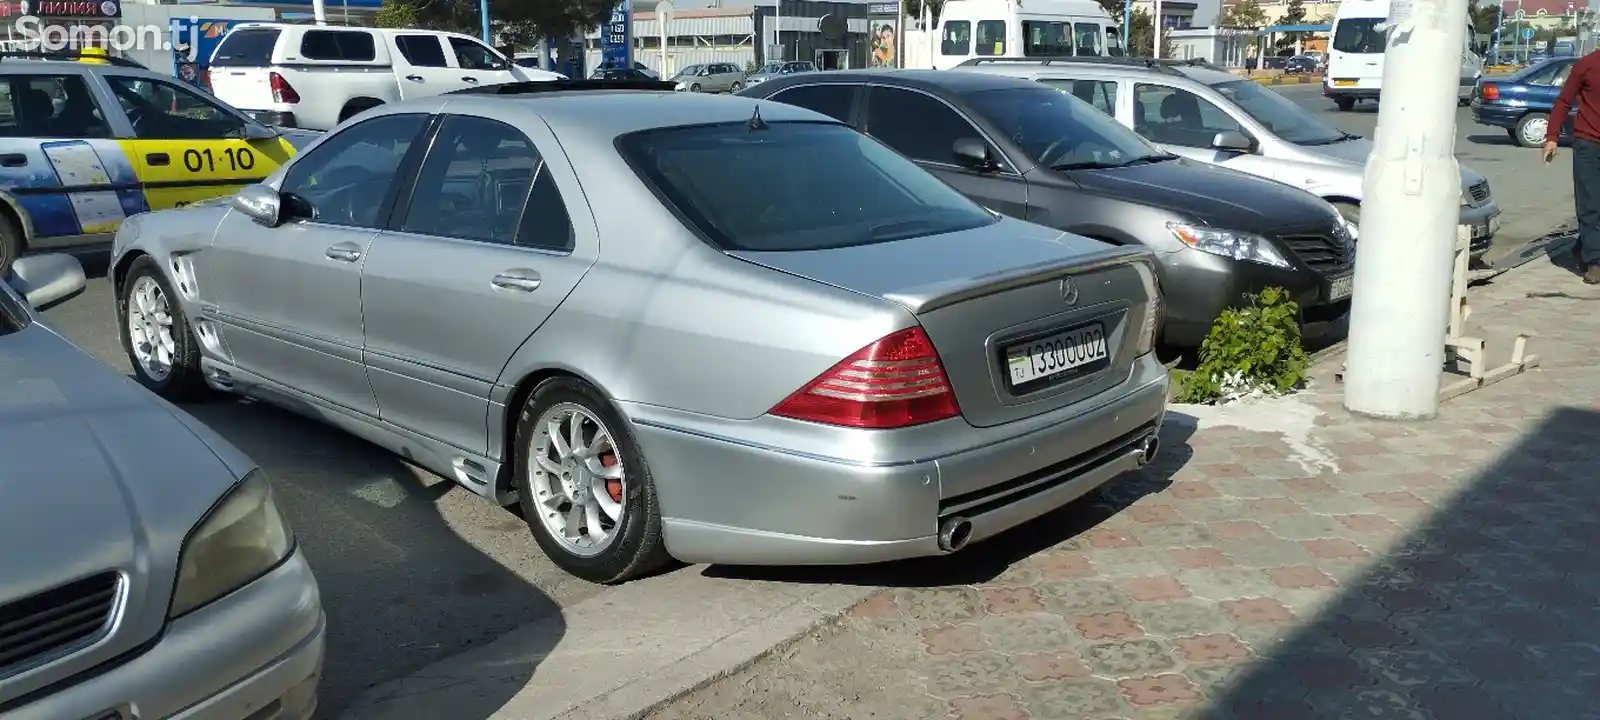 Mercedes-Benz S class, 2000-2